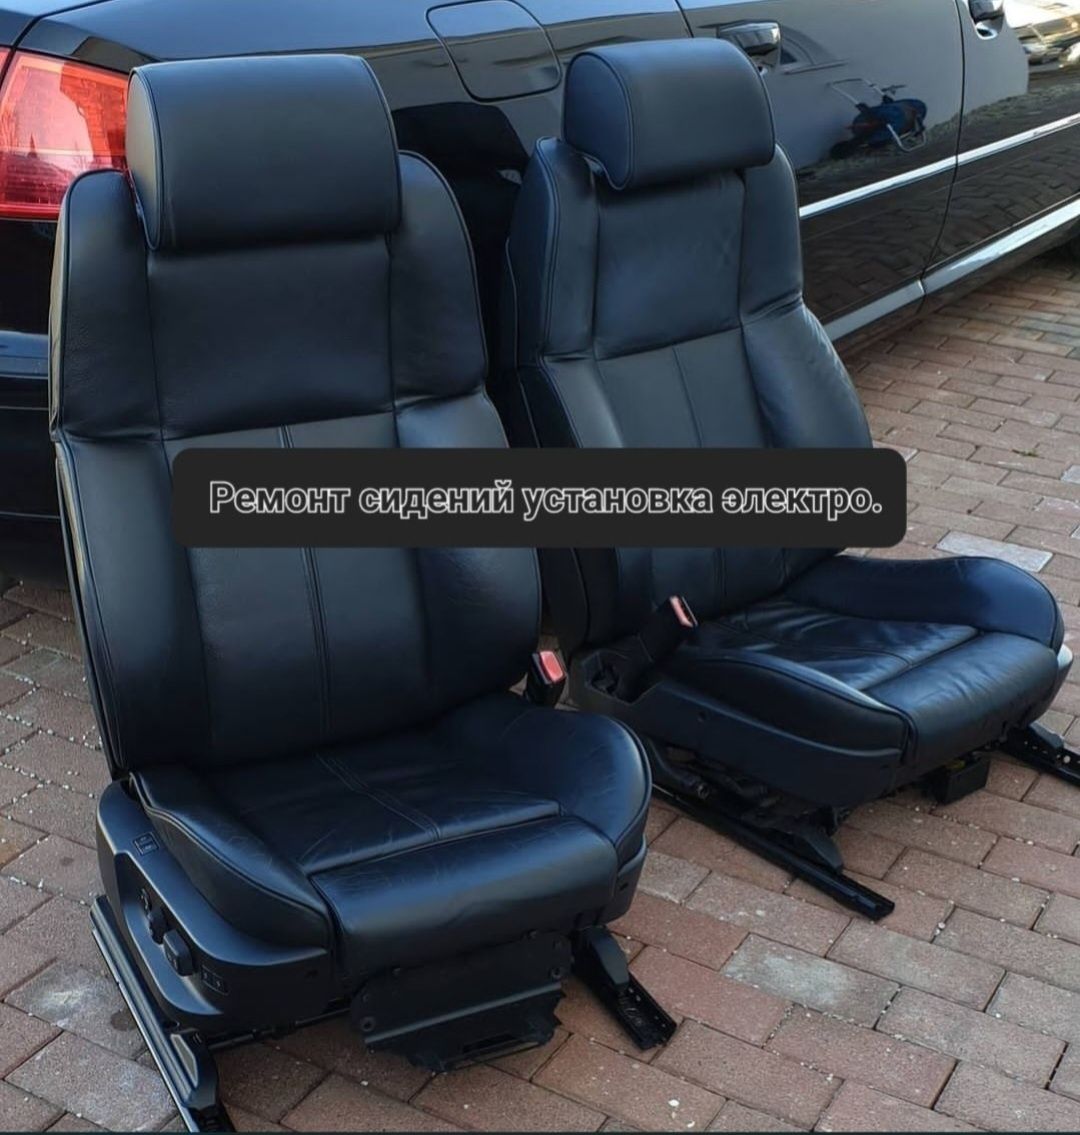 Е60/E61 - Замена сидений на комфорт. | BMW Club